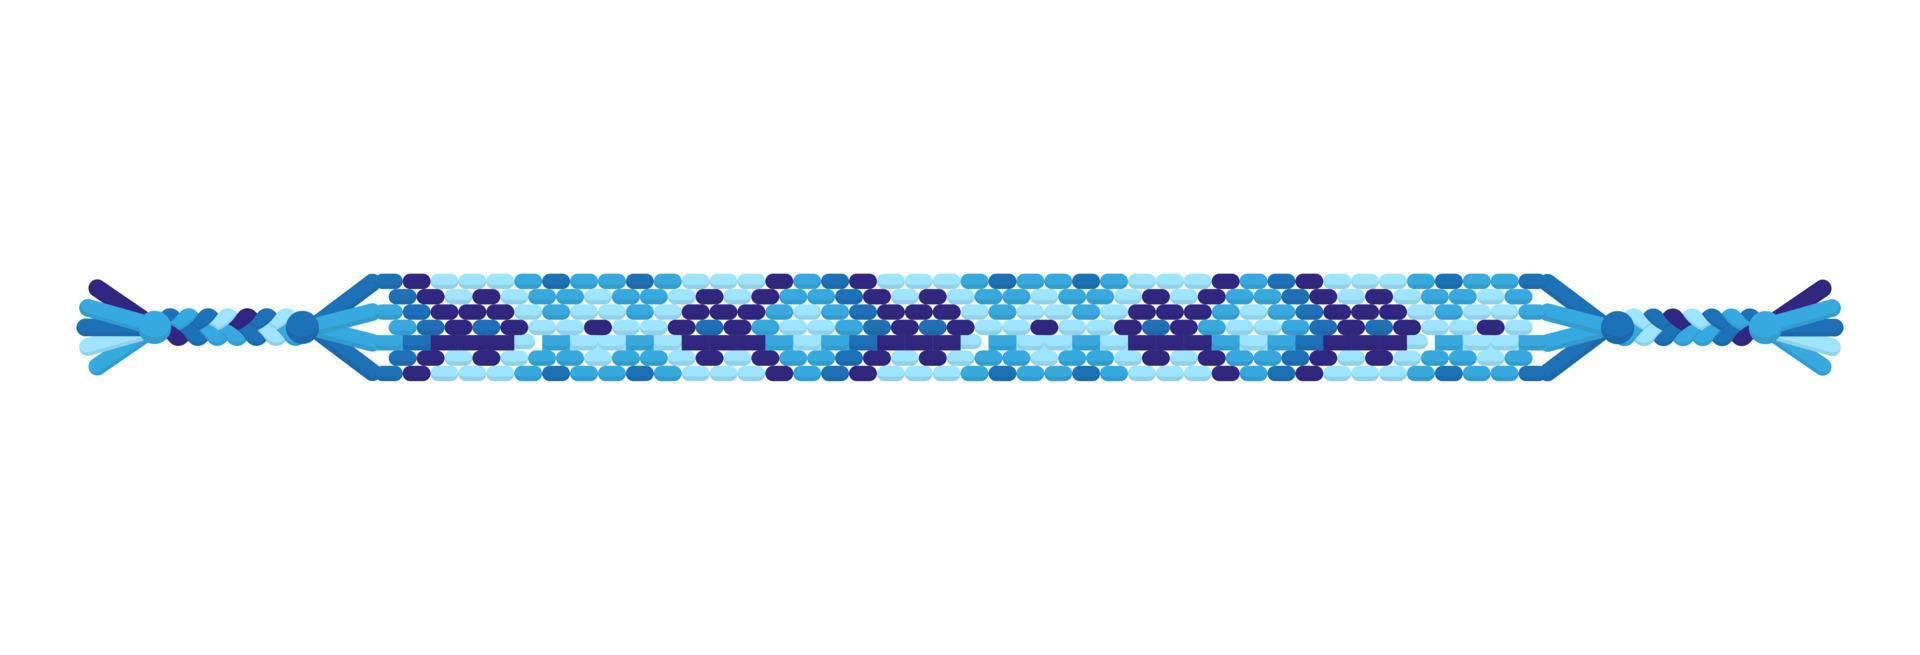 vettore braccialetto di amicizia hippie fatto a mano multicolore di fili blu.